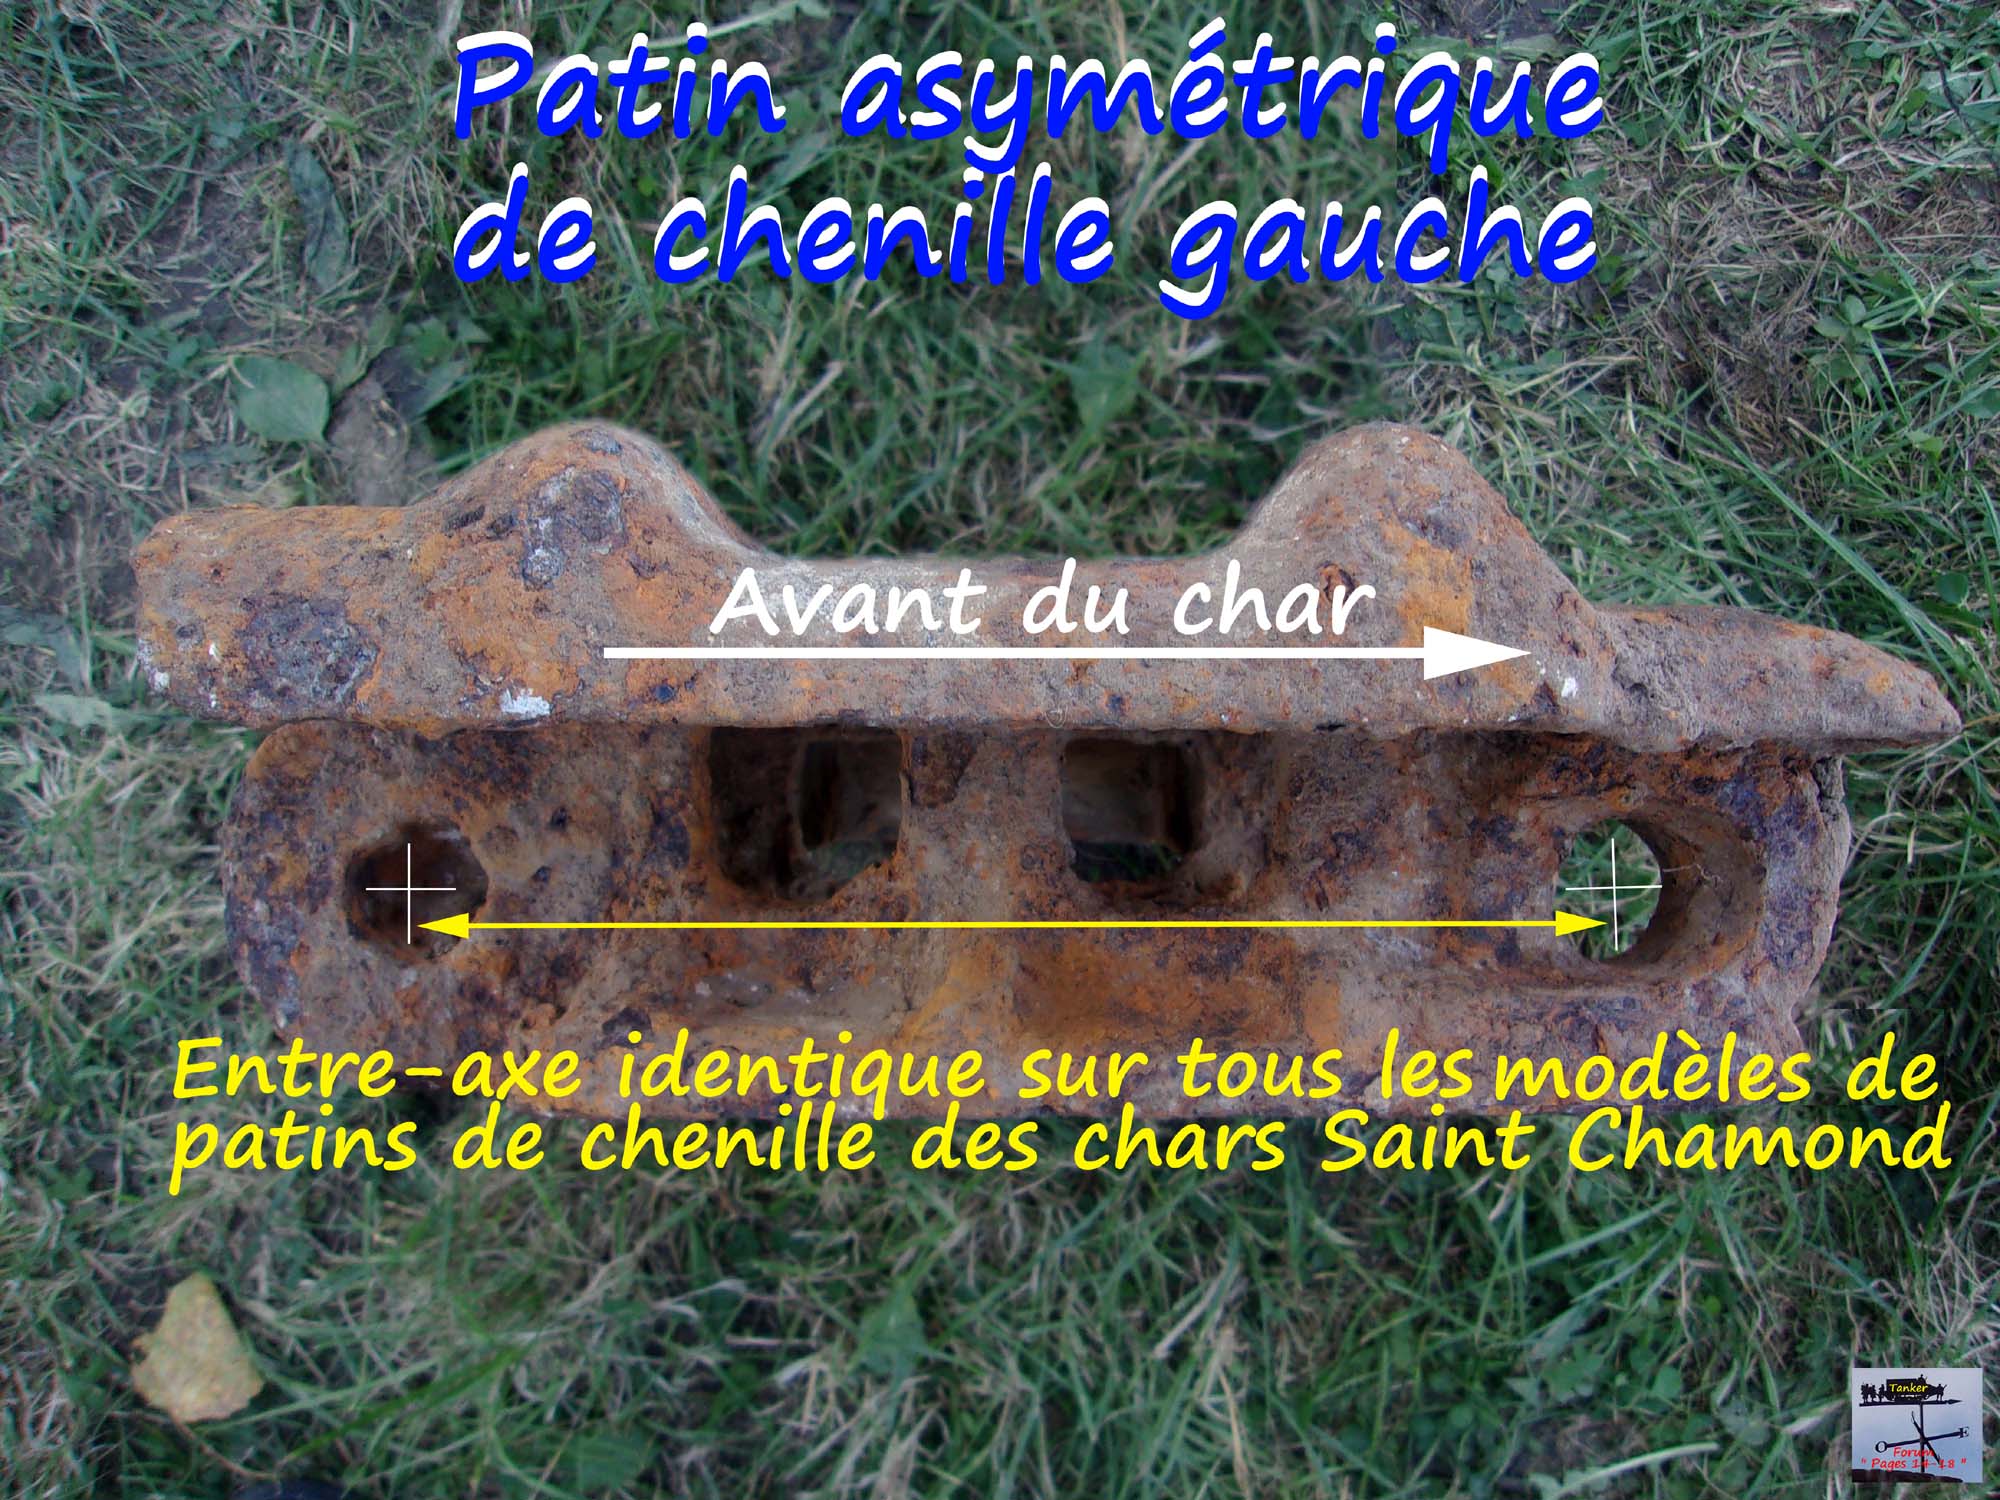 04 - Patin de chenille St Chamond asymétrique.jpg